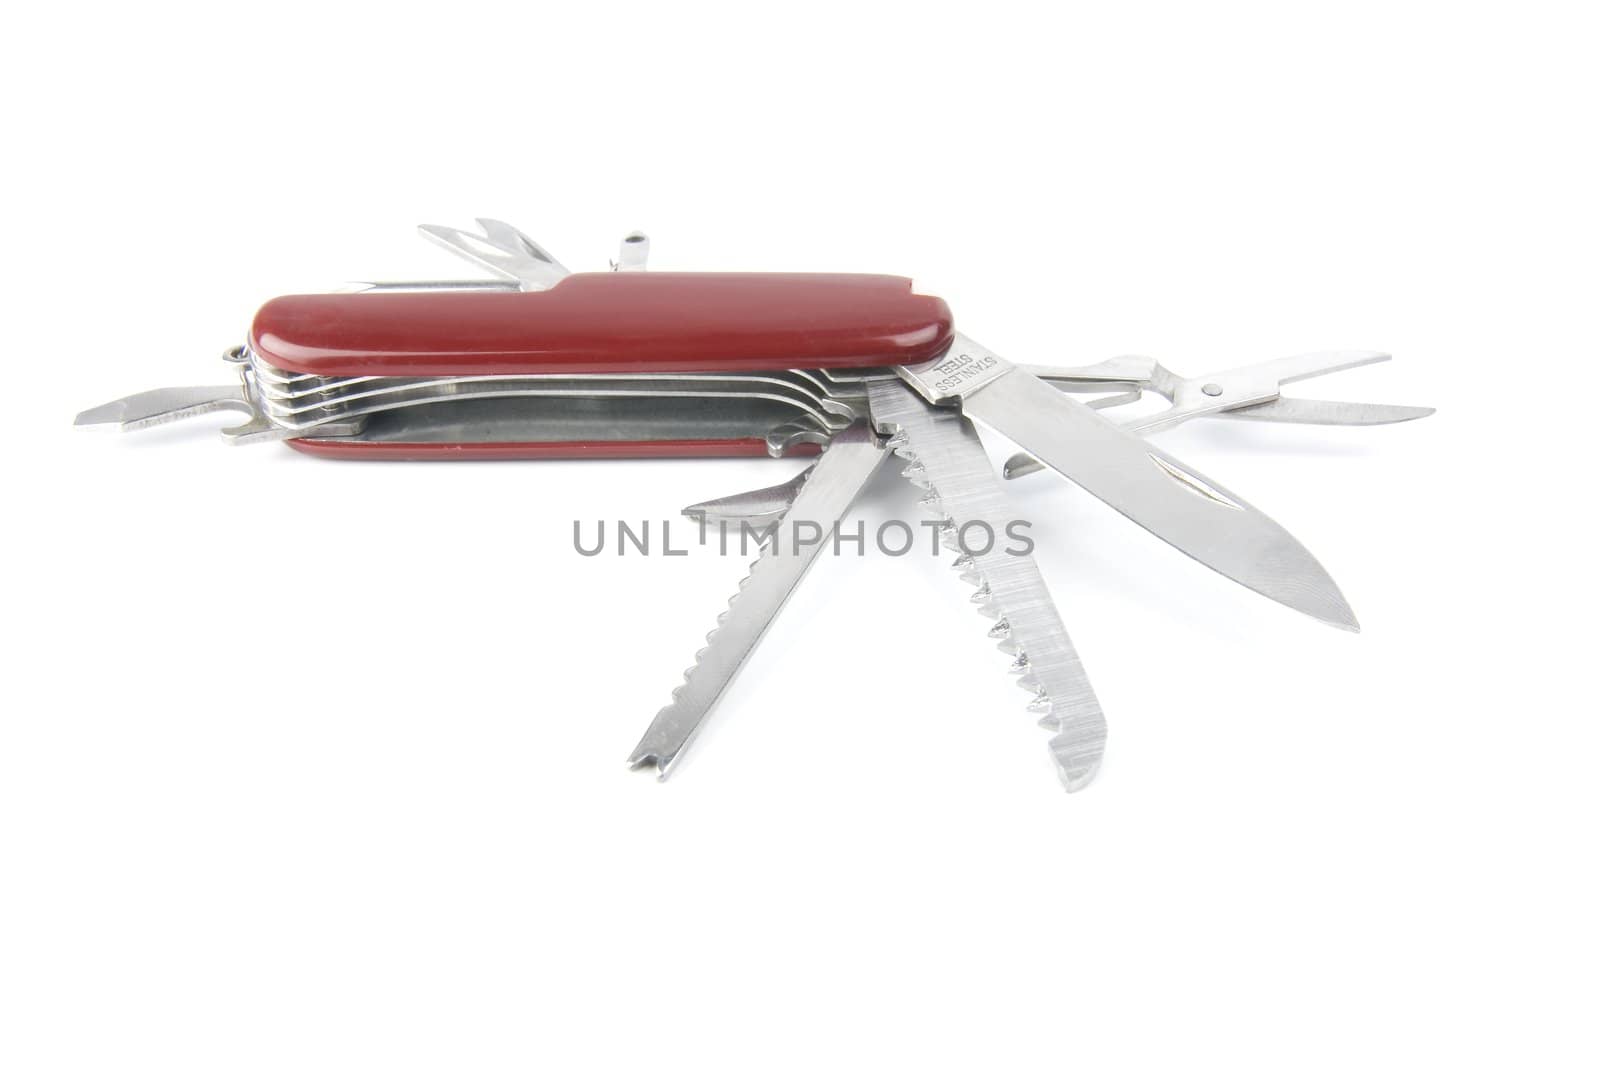 marketing red swiss army pocket knife tool by Trebuchet